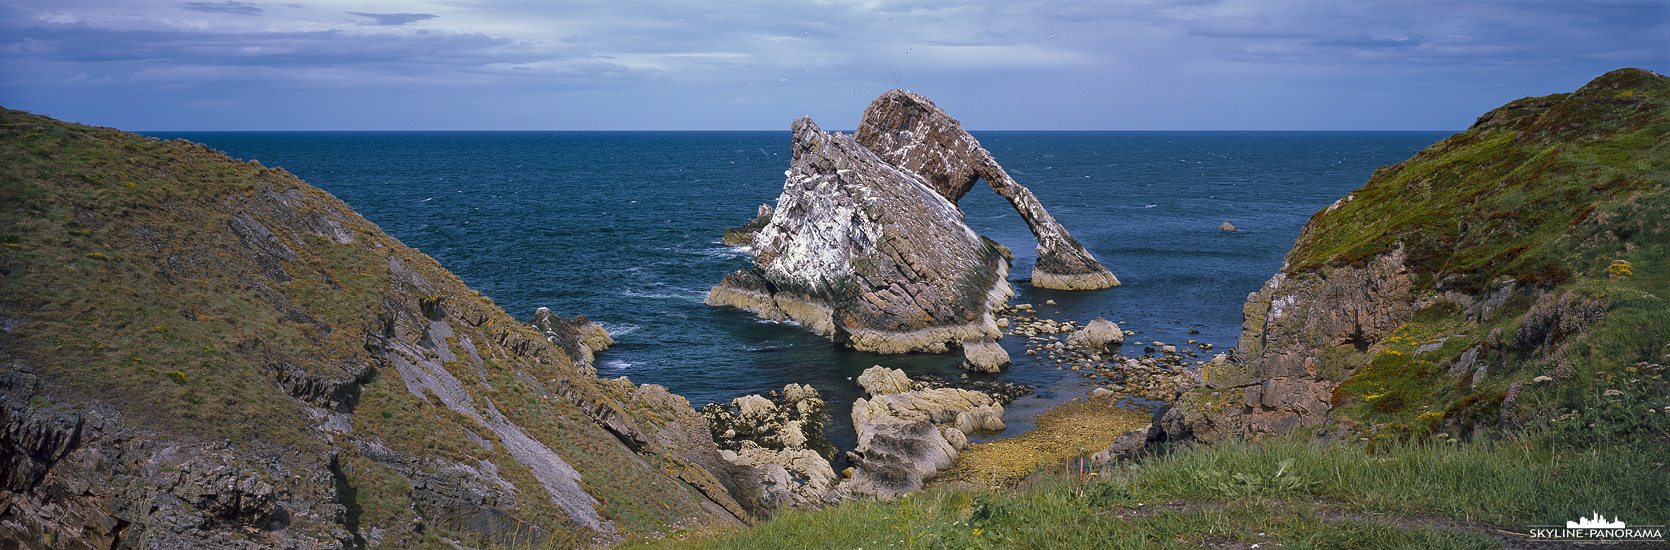 Panorama Schottland - Überlieferungen zu folge trägt der beeindruckende Felsen seinen Namen, weil er aussieht wie die Spitze eines Geigenbogens. Der Bow Fiddle Rock ist ein natürlicher Meeresbogen in der Nähe des Ortes Portknockie an der Nordostküste Schottlands, man kann ihn bequem in einem kurzen Spaziergang vom Ort erreichen.